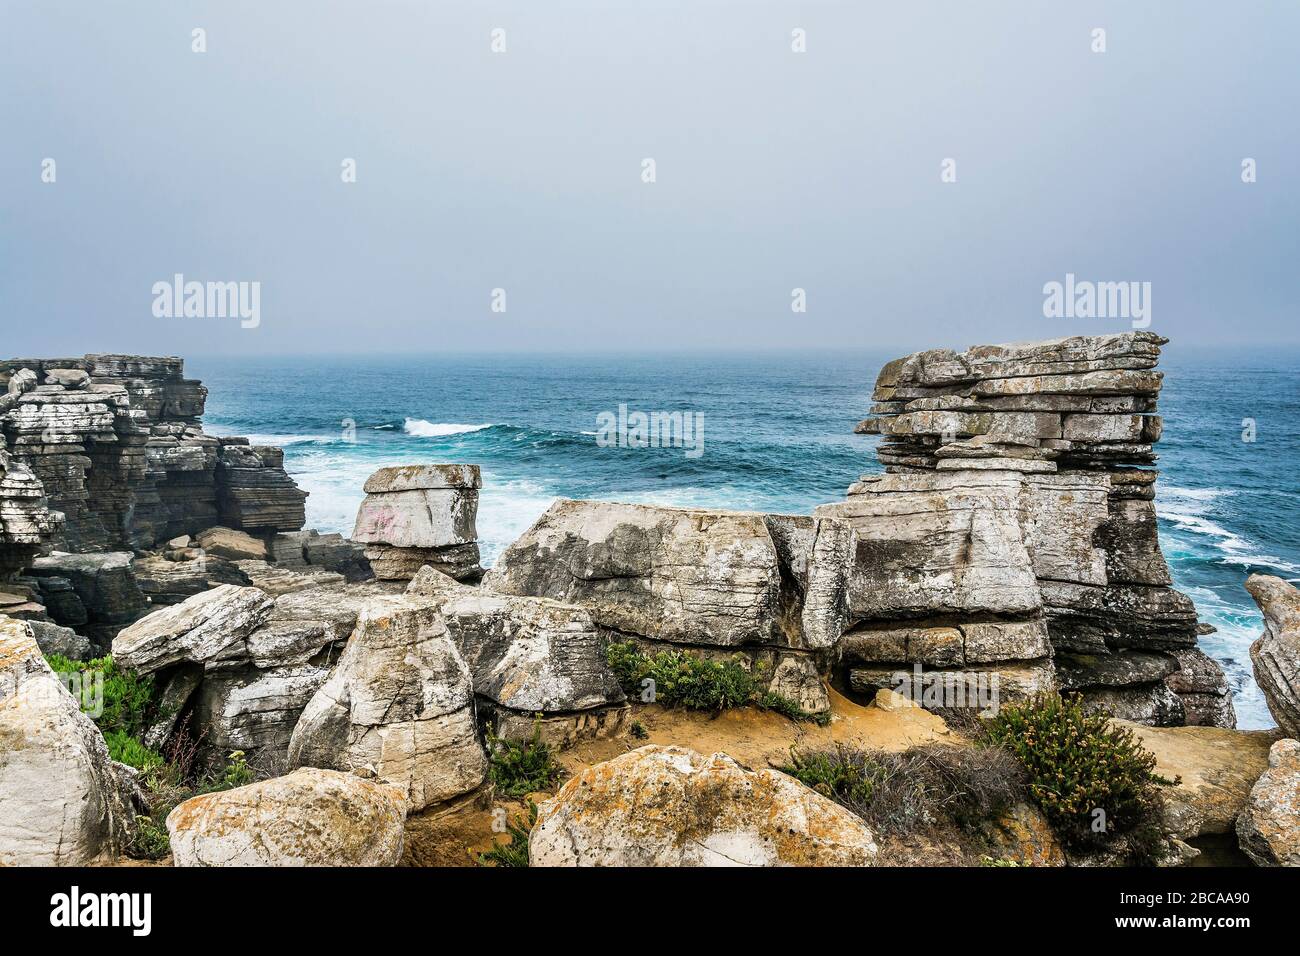 Europe, Portugal, Centro Region, Peniche Peninsula, Miradouro de Remedios, formations rocheuses sur la côte rocheuse Banque D'Images